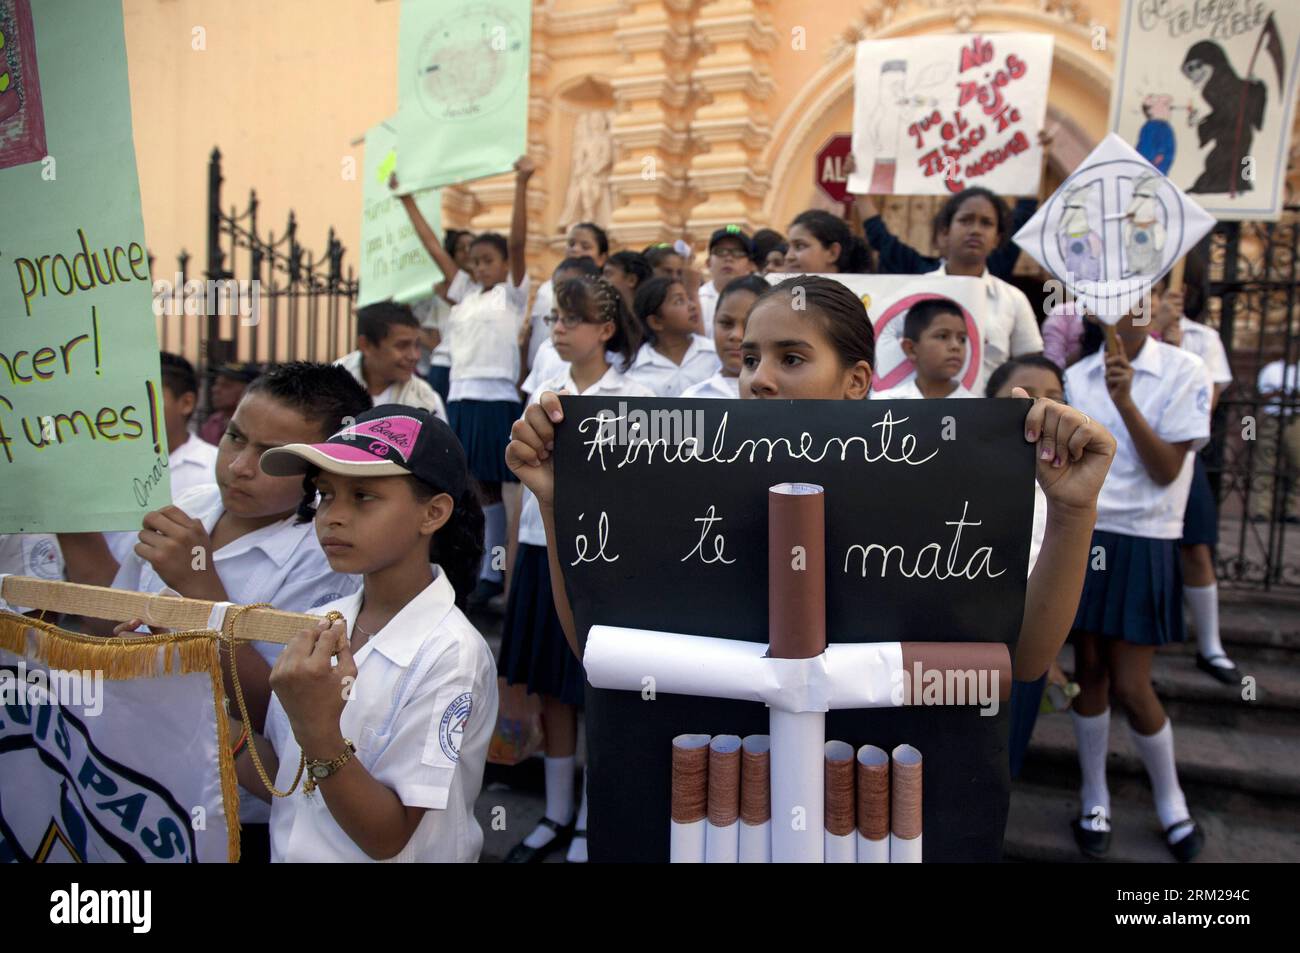 Bildnummer : 59744383 Datum : 31.05.2013 Copyright : imago/Xinhua (130601) -- TEGUCIGALPA, 31 mai 2013 (Xinhua) -- des étudiants participent à une marche pour marquer la Journée mondiale sans tabac, à Tegucigalpa, capitale du Honduras, le 31 mai 2013. (Xinhua/Rafael Ochoa) (zf) HONDURAS-TEGUCIGALPA-HEALTH-WORLD PAS DE JOURNÉE DU TABAC PUBLICATIONxNOTxINxCHN Gesellschaft Geundheit anti Tabak Tag xdp x0x 2013 quer premiumd 59744383 Date 31 05 2013 Copyright Imago XINHUA Tegucigalpa Mai 31 2013 des étudiants de XINHUA participent à une marche pour marquer la Journée mondiale sans tabac à Tegucigalpa capitale du Honduras Mai 31 2013 XINHUA R. Banque D'Images